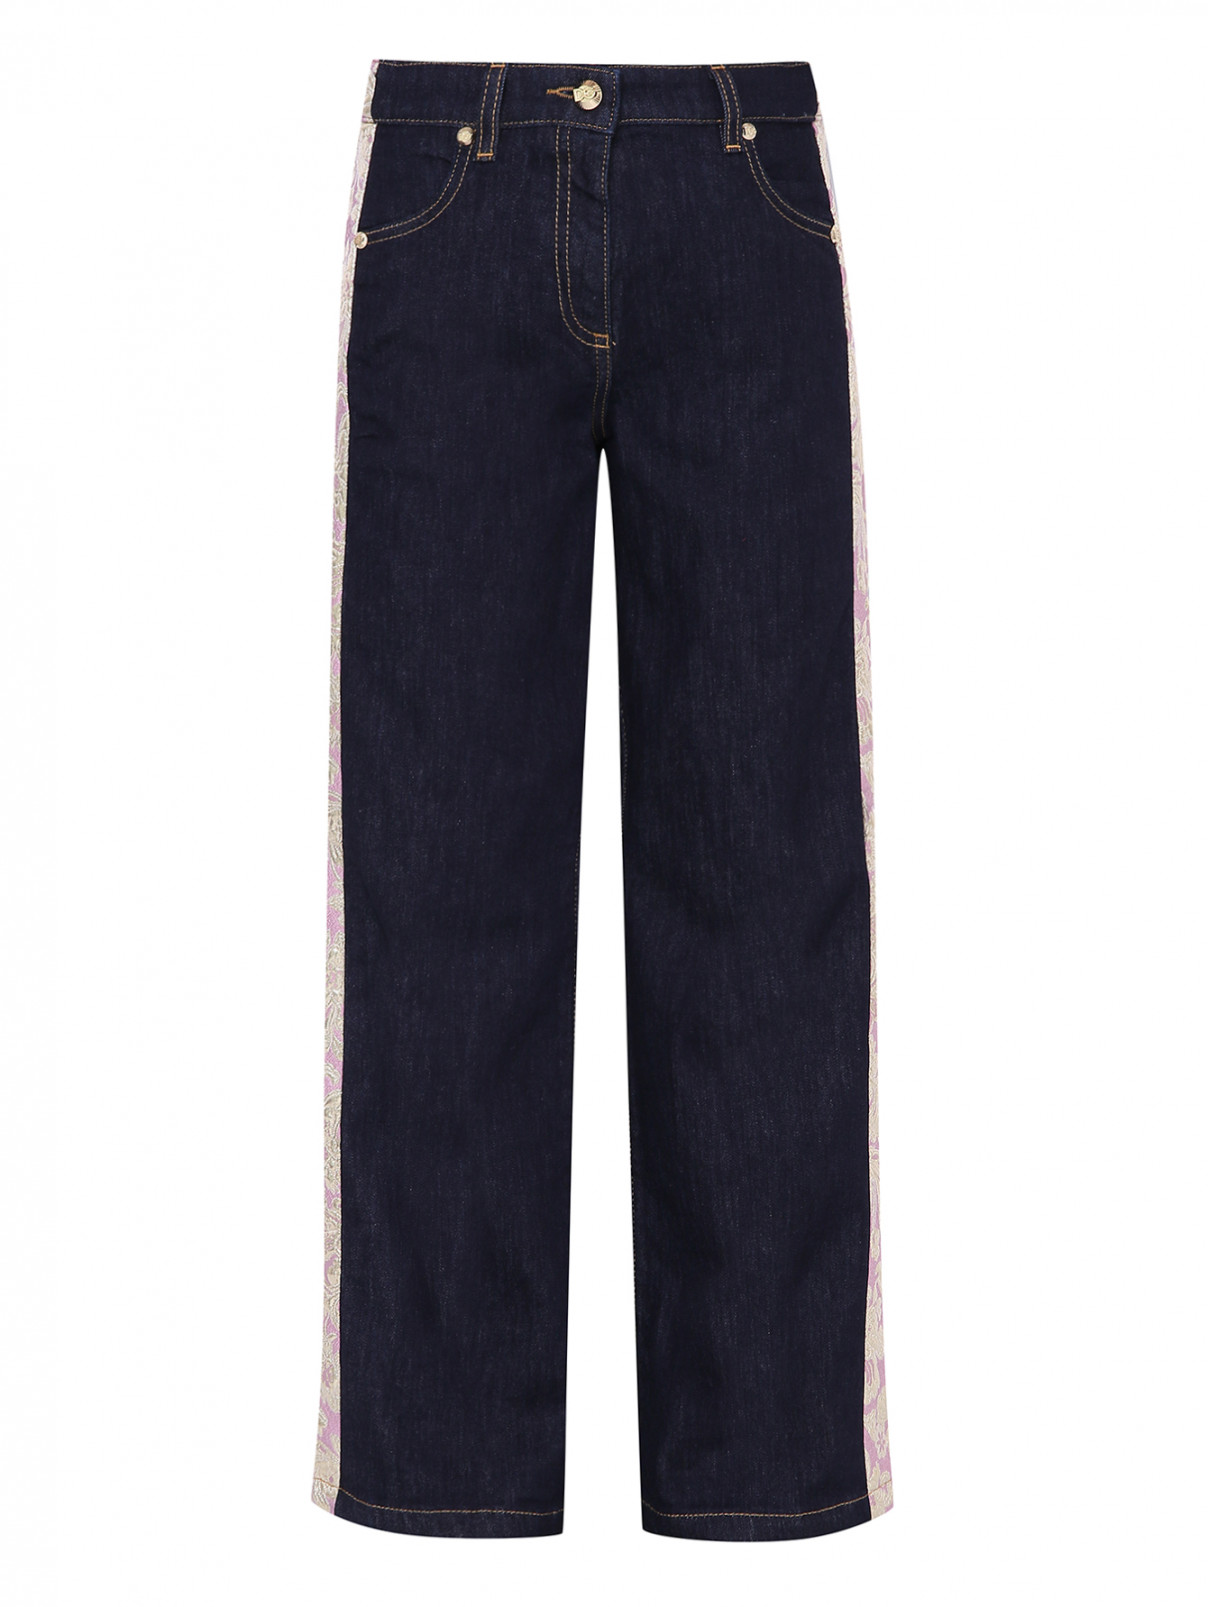 Широкие джинсы с лампасами Dolce & Gabbana  –  Общий вид  – Цвет:  Синий